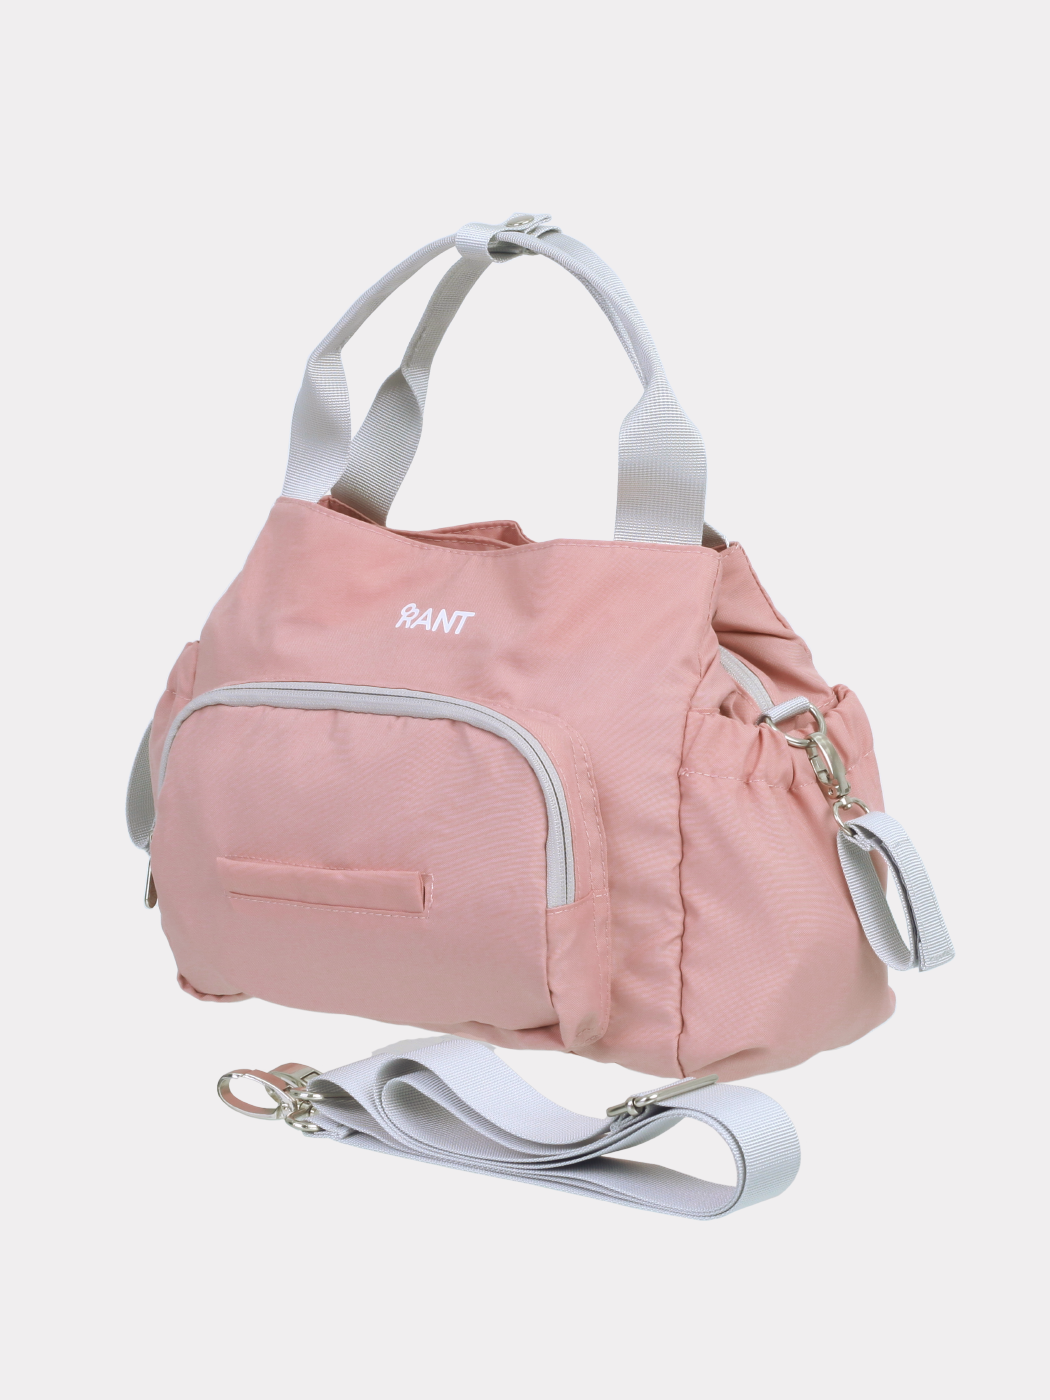 Сумка для мамы RANT Flocky Cloud Pink сумка devia justyle business inner macbook bag для macbook air 13 3 macbook pro 13 3 pink